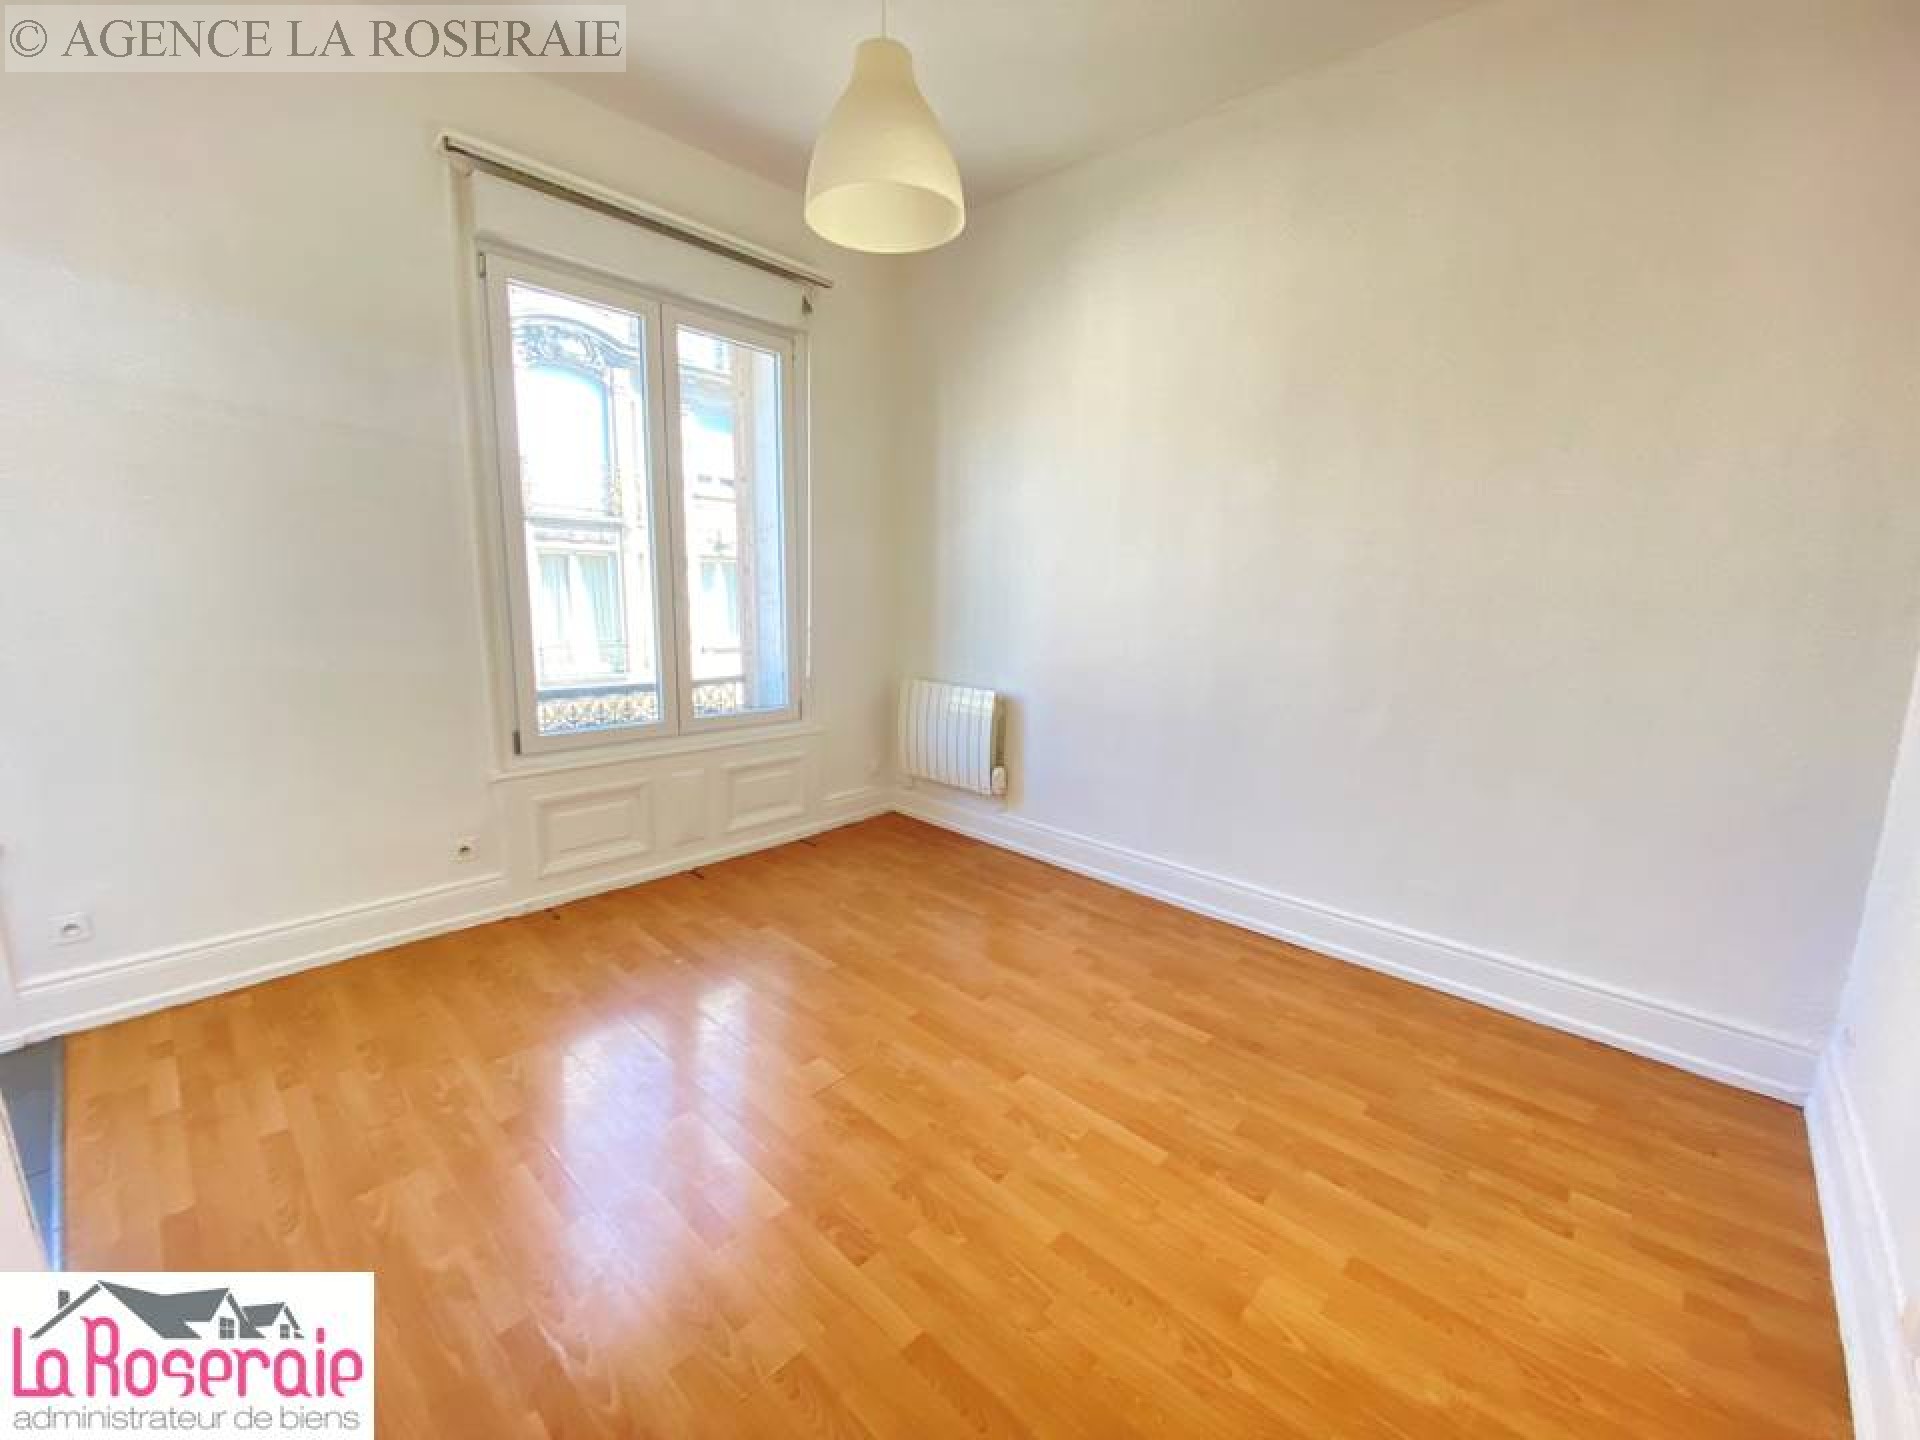 Location appartement - MULHOUSE 21 m², 1 pièce